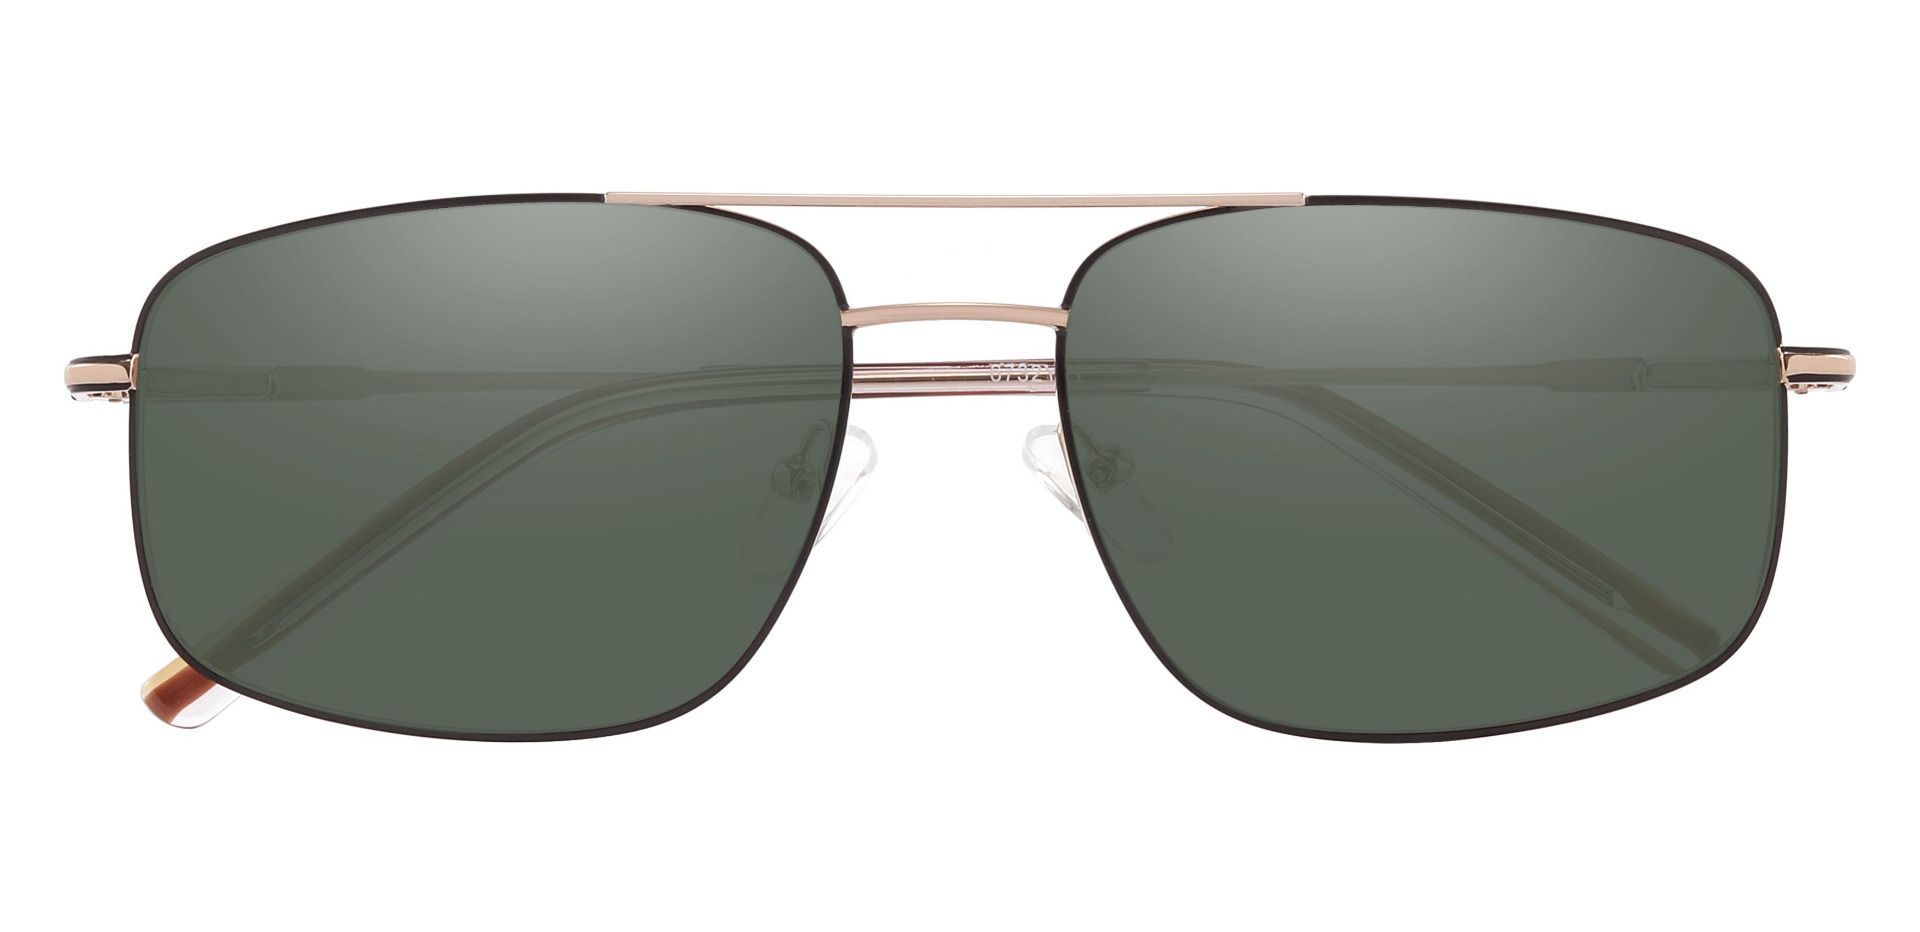 Turner Aviator Progressive Sunglasses - Gold Frame With Green Lenses